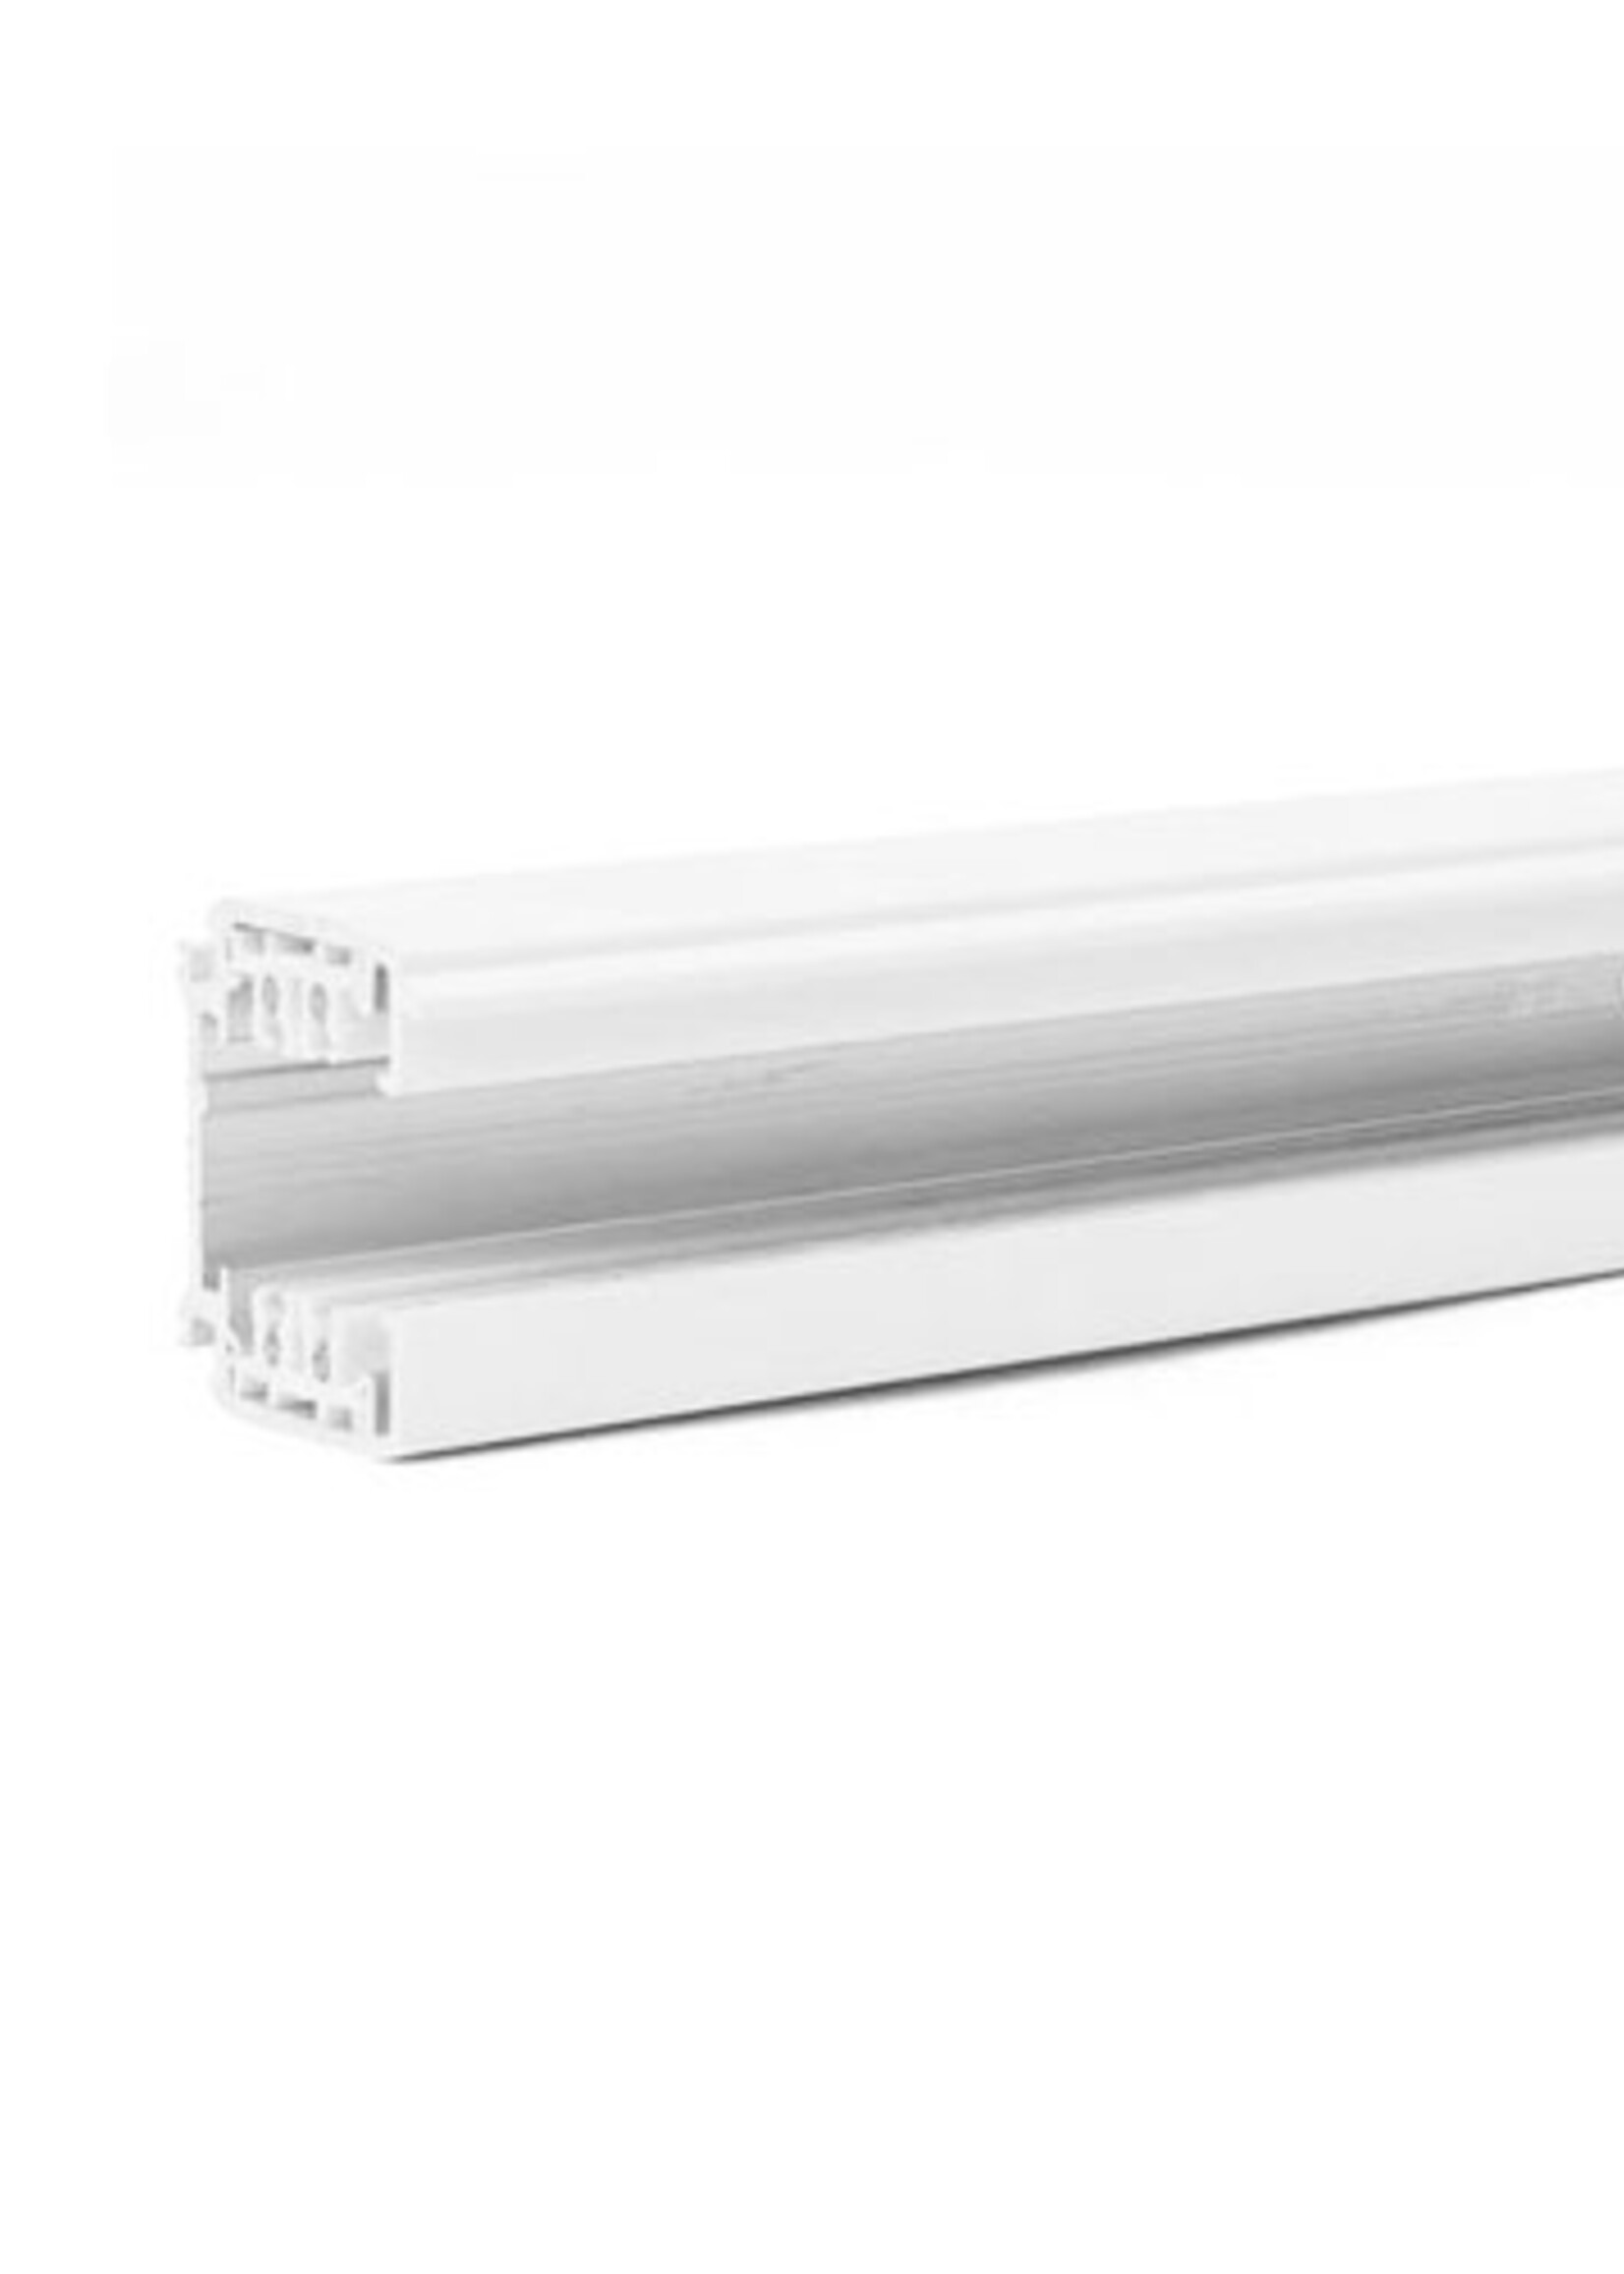 LEDWINKEL-Online LED Track Rail 1.5 meter 3-phase white